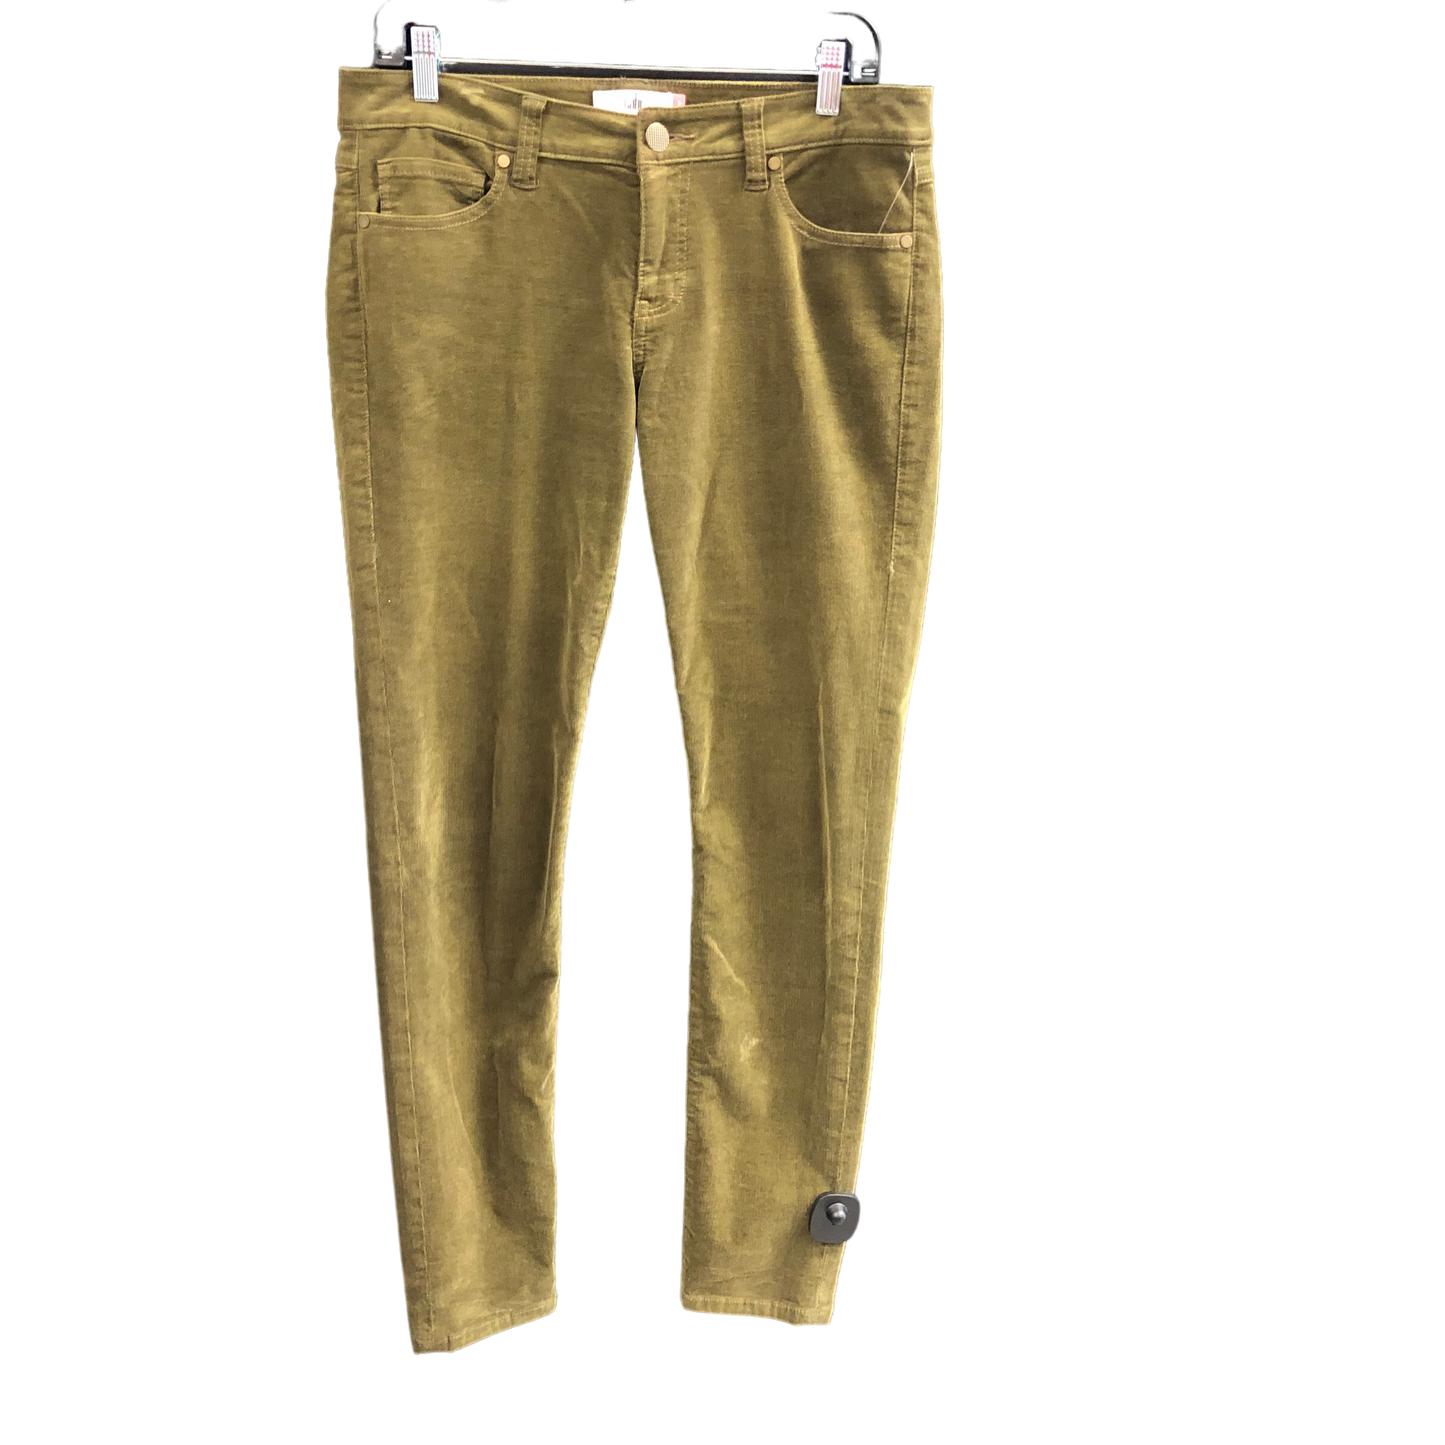 Green Pants Corduroy Cabi, Size 8